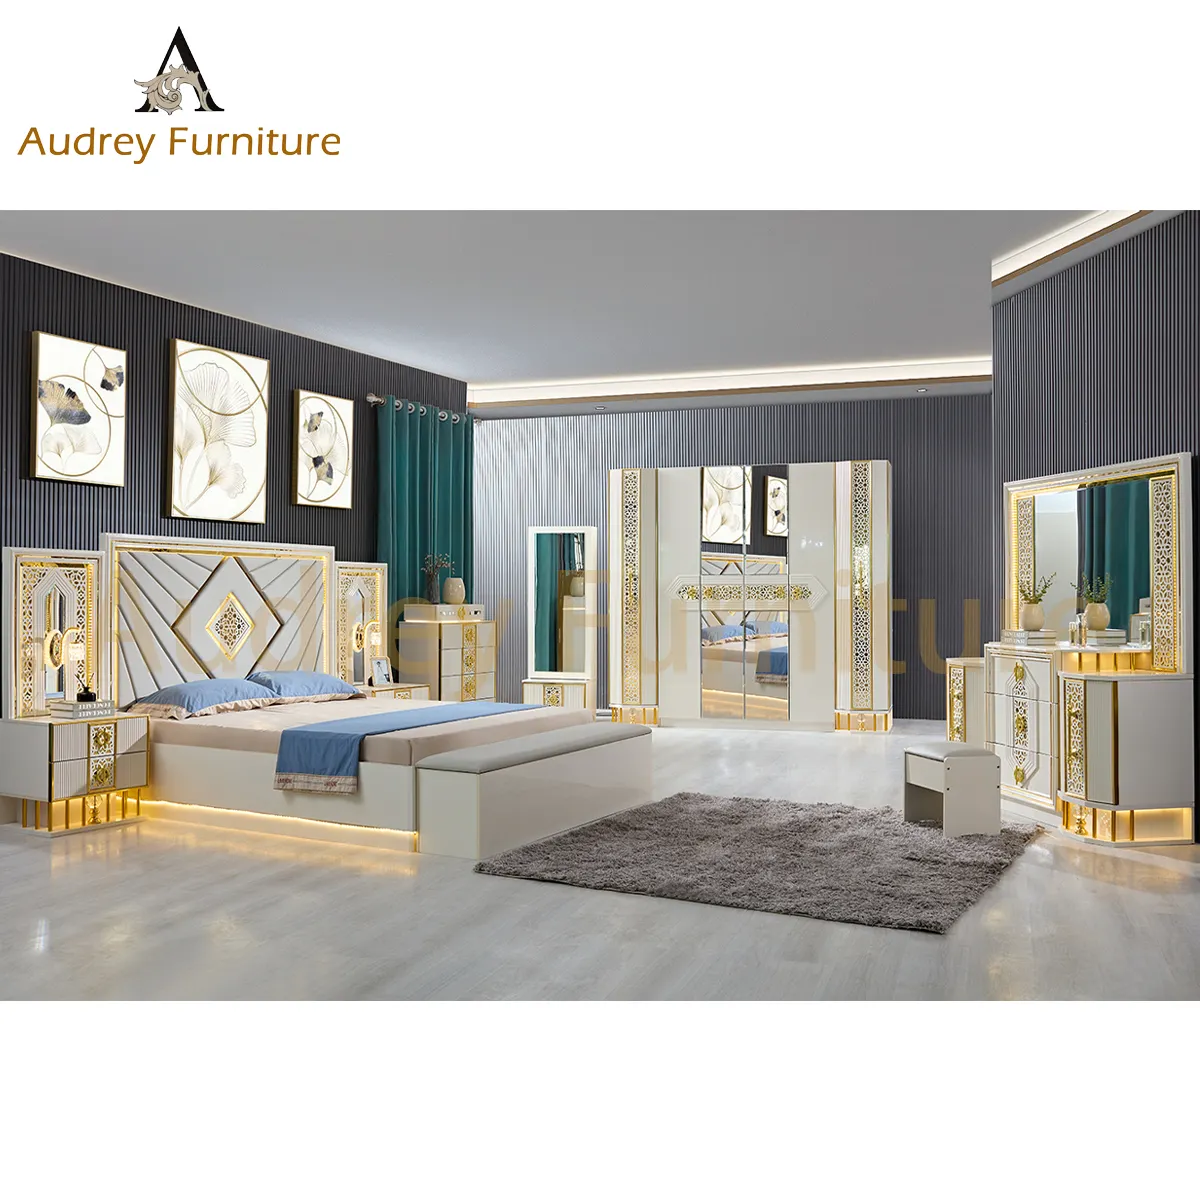 مجموعة غرفة نوم Audrey الفاخرة بحجم كبير مكونة من 5 قطع عالية الجودة من أثاث غرفة النوم بتصميم علامة تجارية